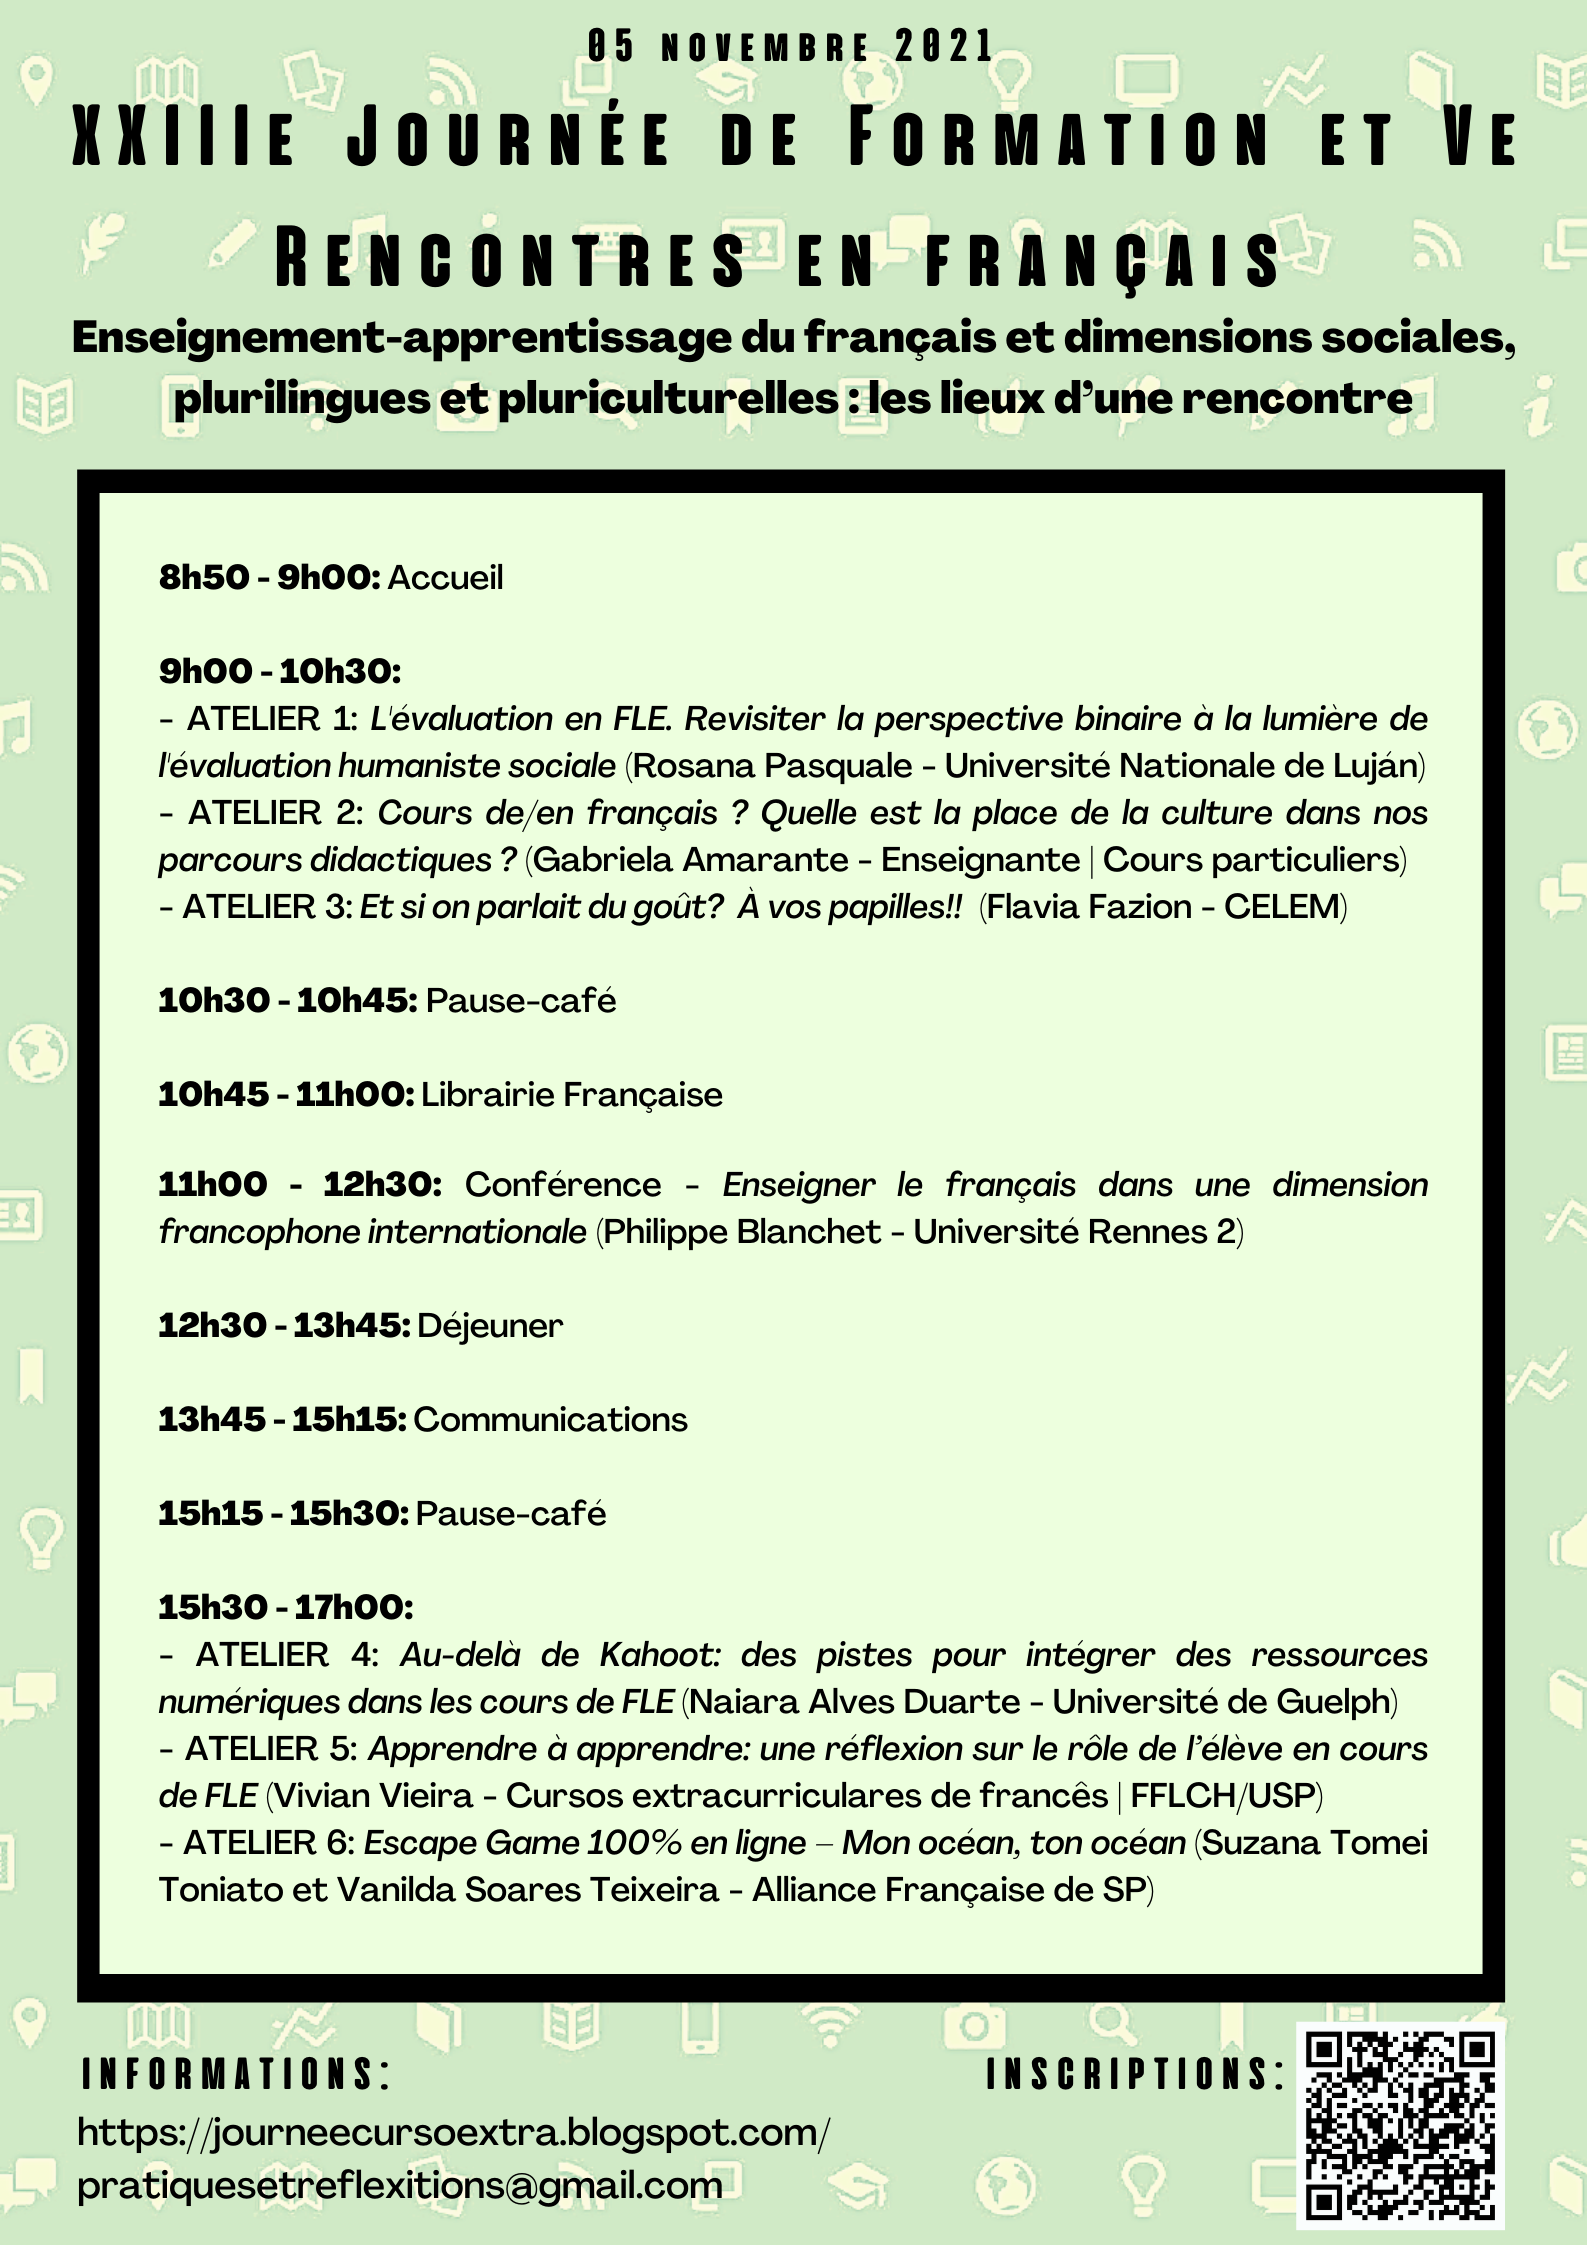 Programação da XXIIIe Journée de Formation et Ve Rencontres en français, dia 05